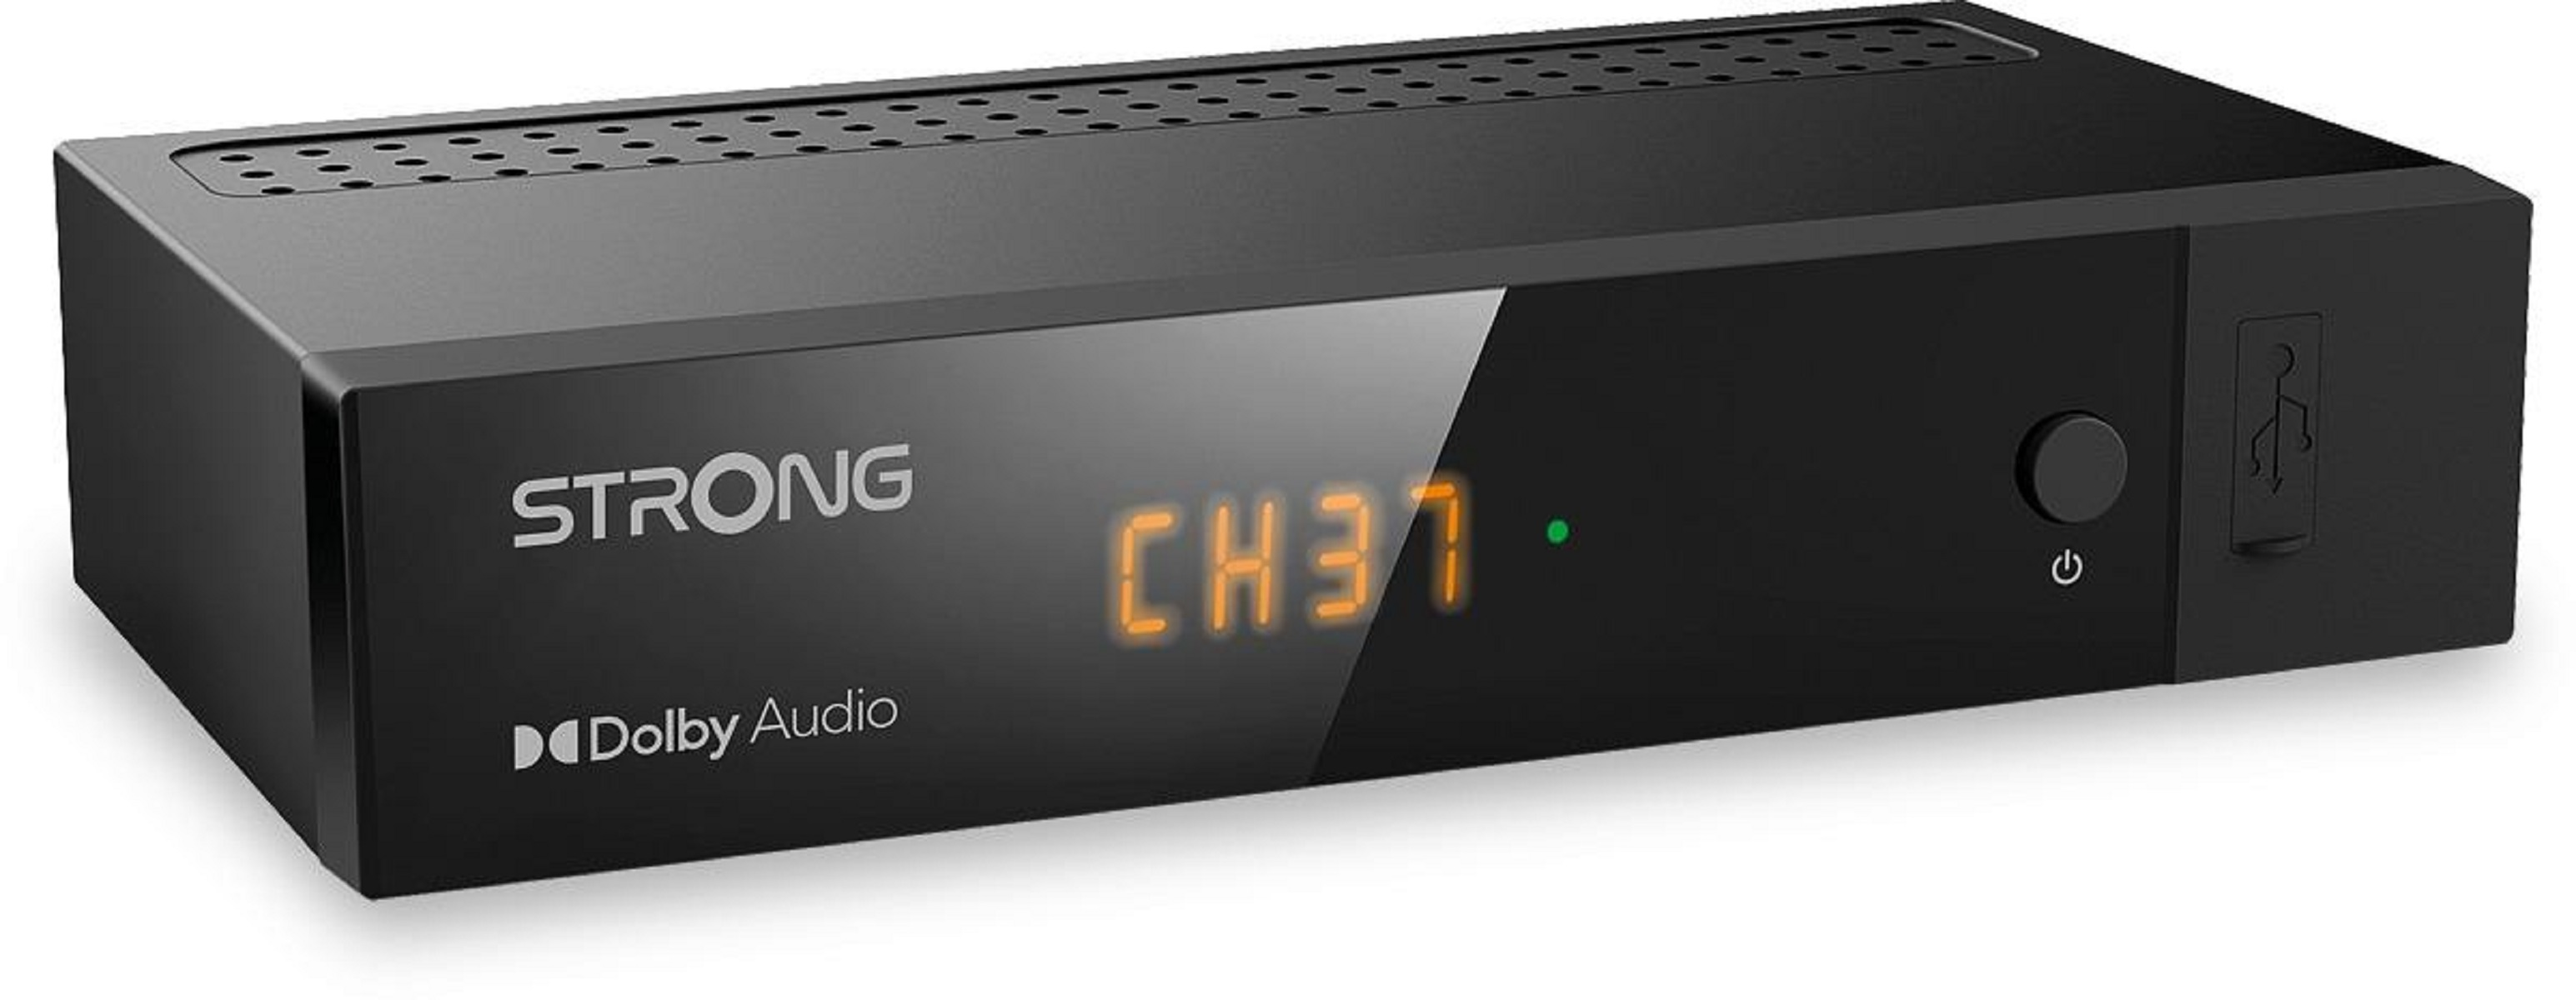 STRONG 8216 schwarz) Terrestrischer HD (DVB-T2 SRT (H.265), Receiver